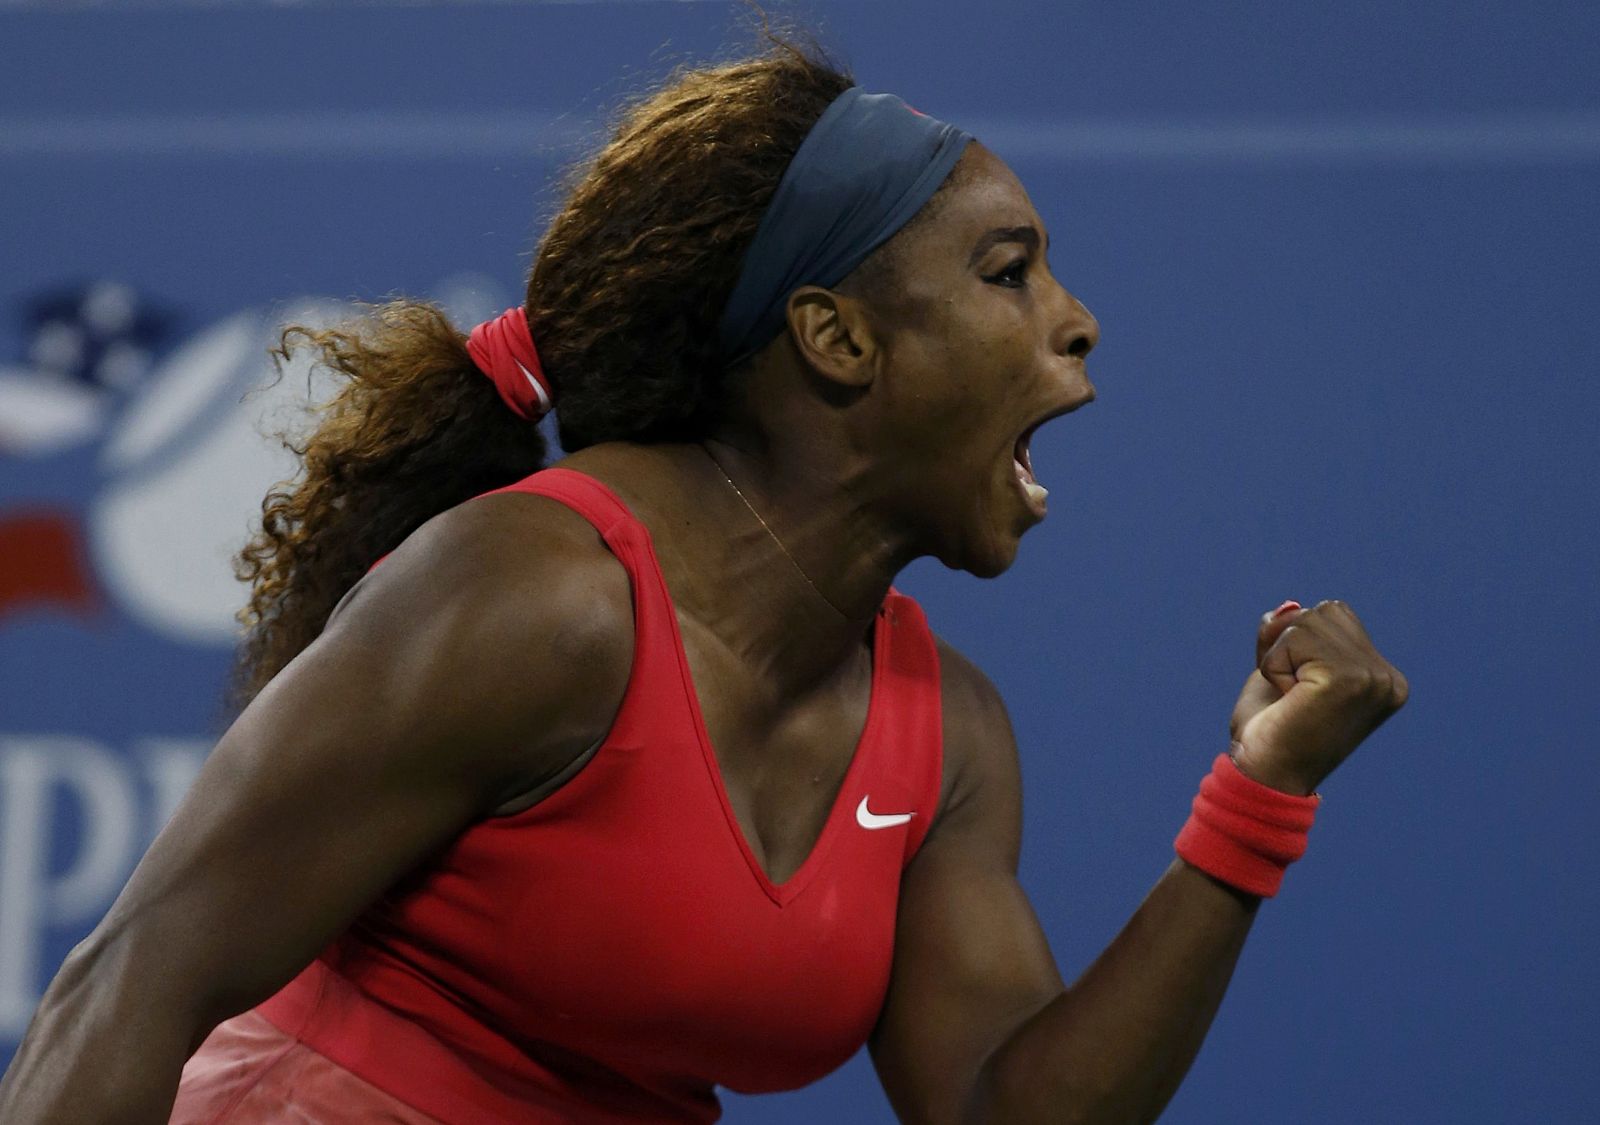 La tenista estadounidense Serena Williams celebra un punto conseguido en la final del US Open 2013 contra la bielorrusa Victoria Azarenka